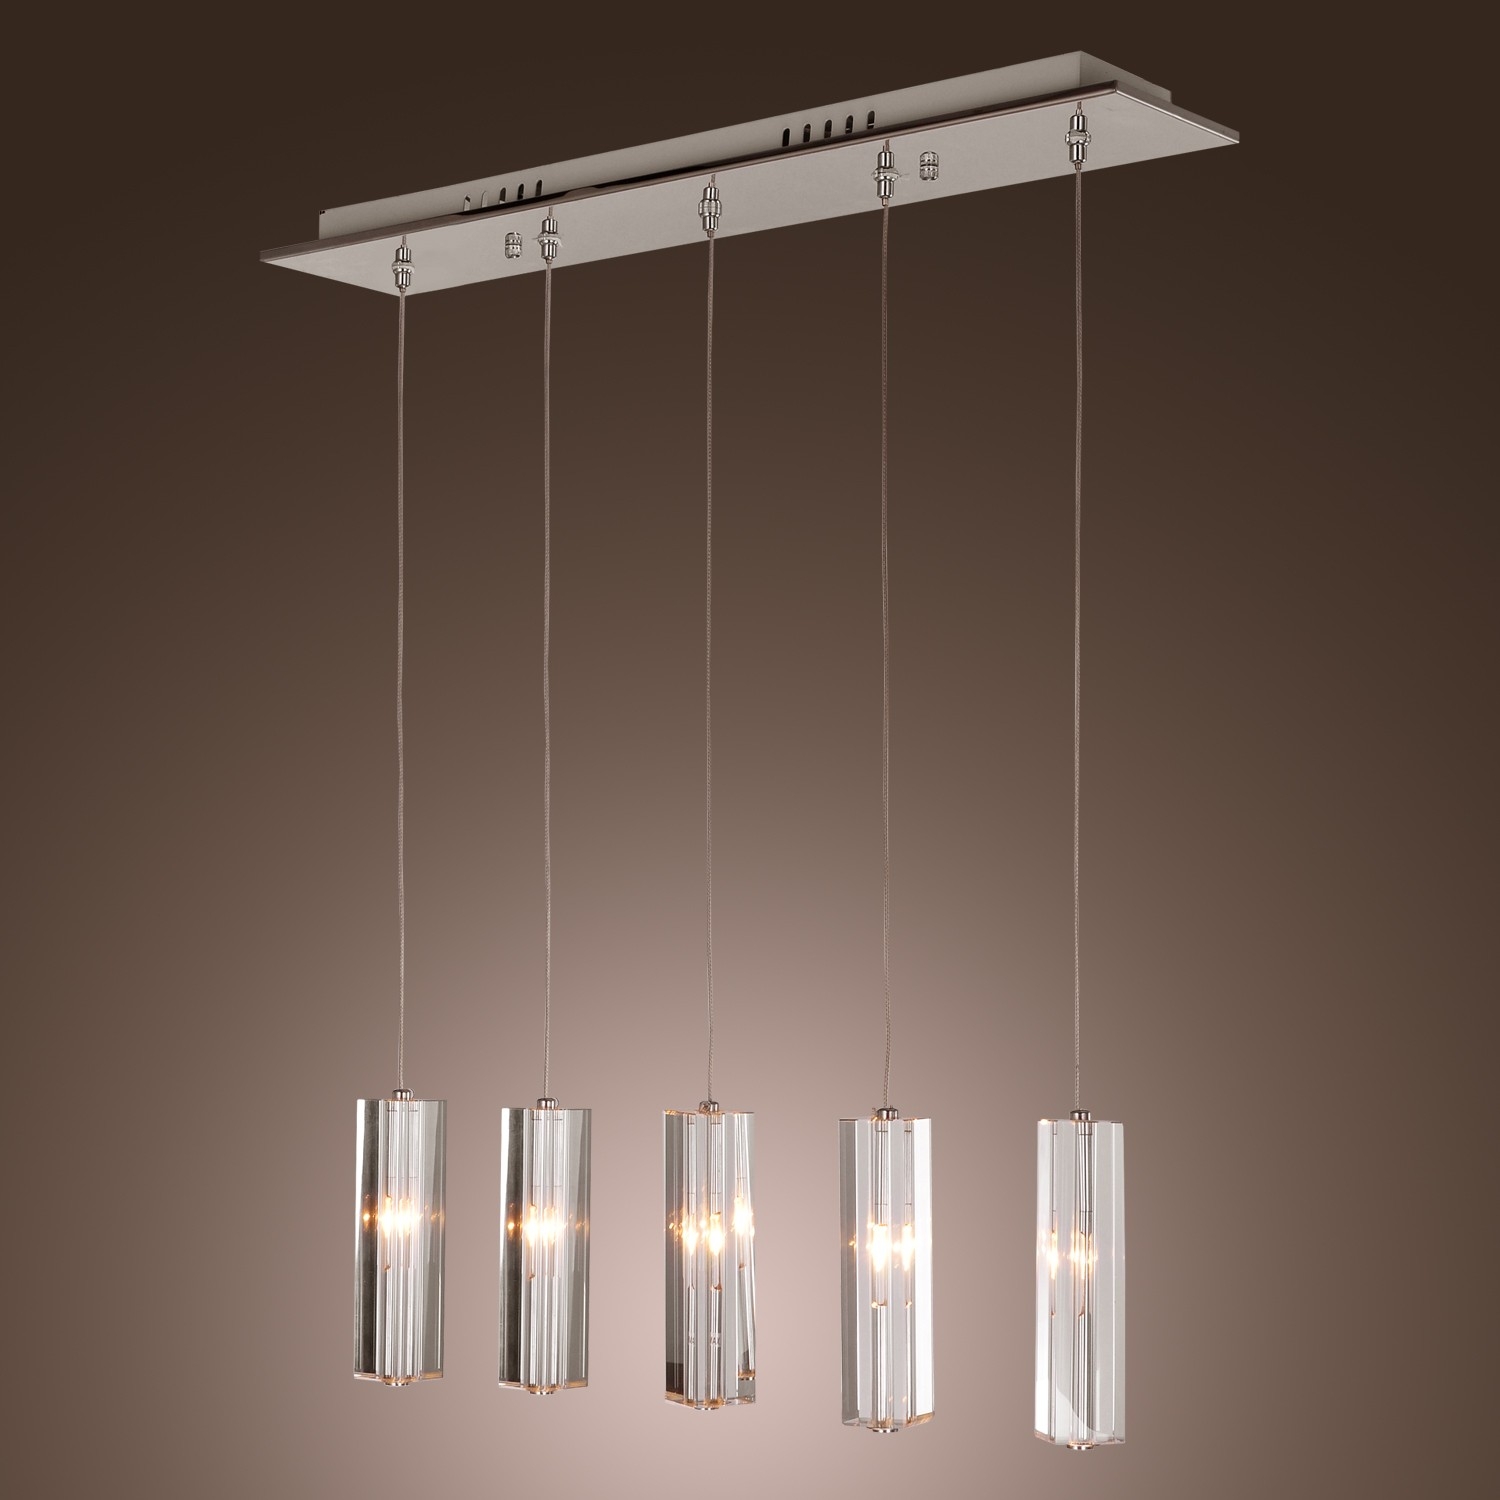 Ceiling Bar Light Fixturesappealing interior chrome pendant light marku home design